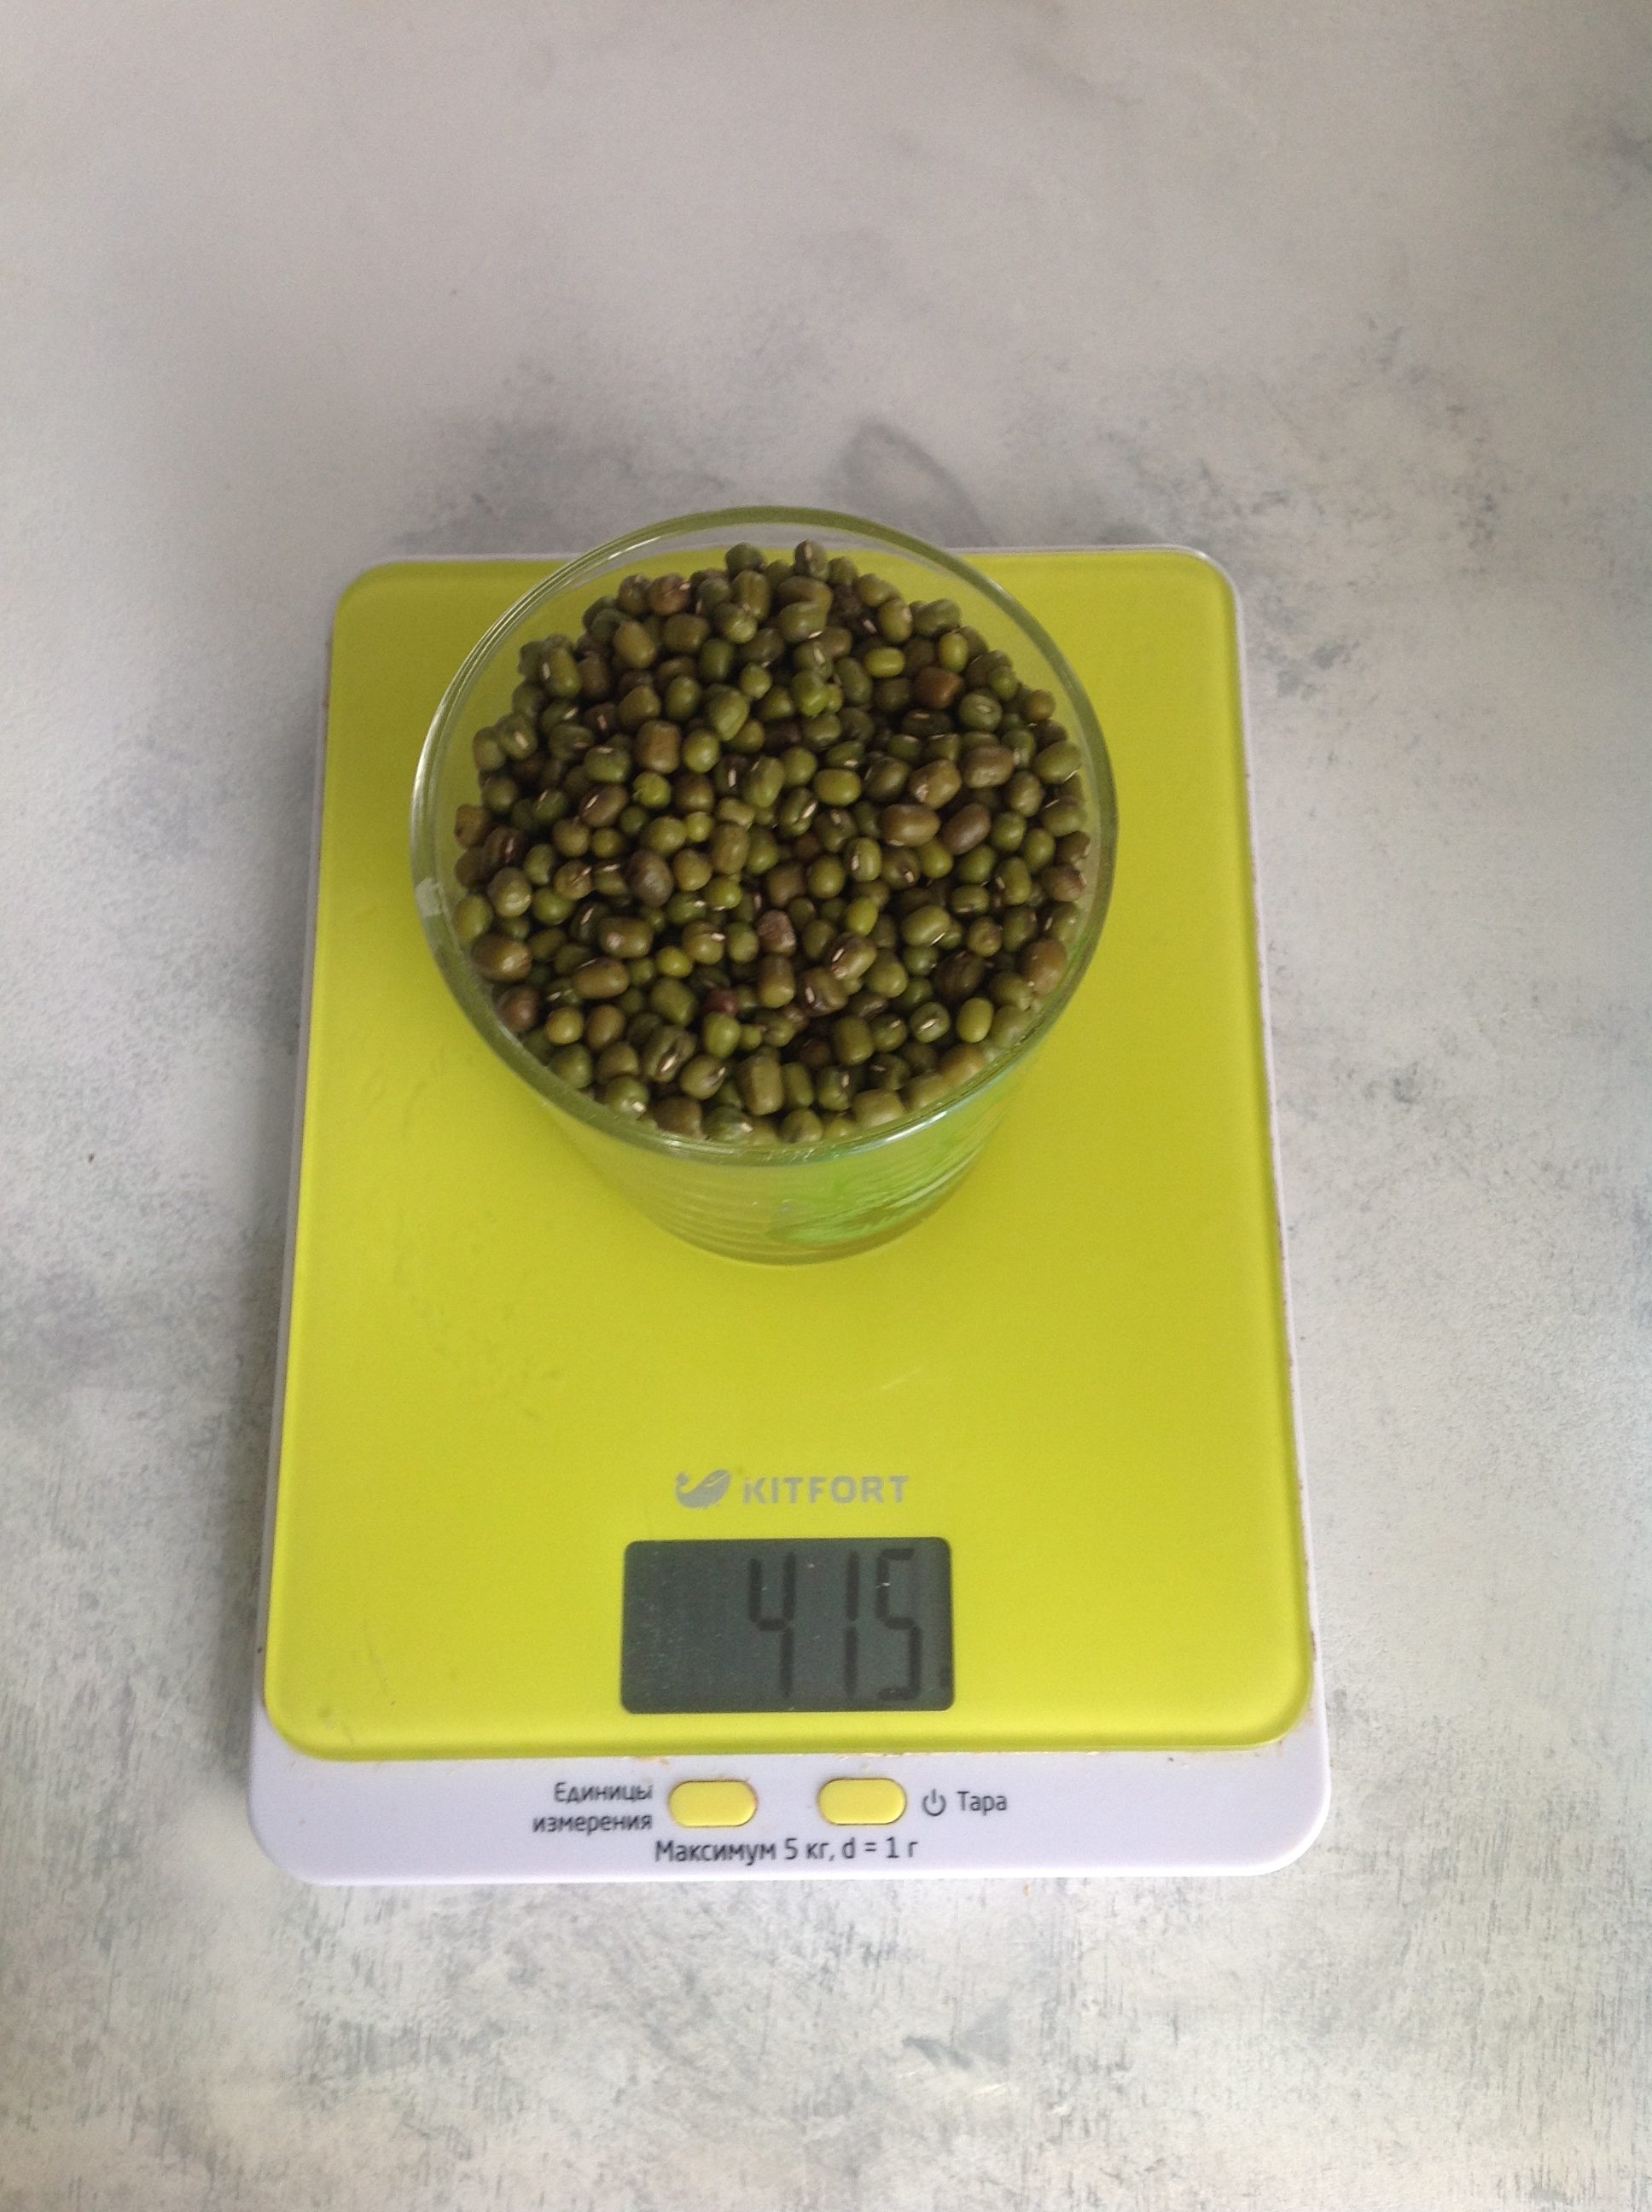 250 毫升玻璃杯中的绿豆干有多重？